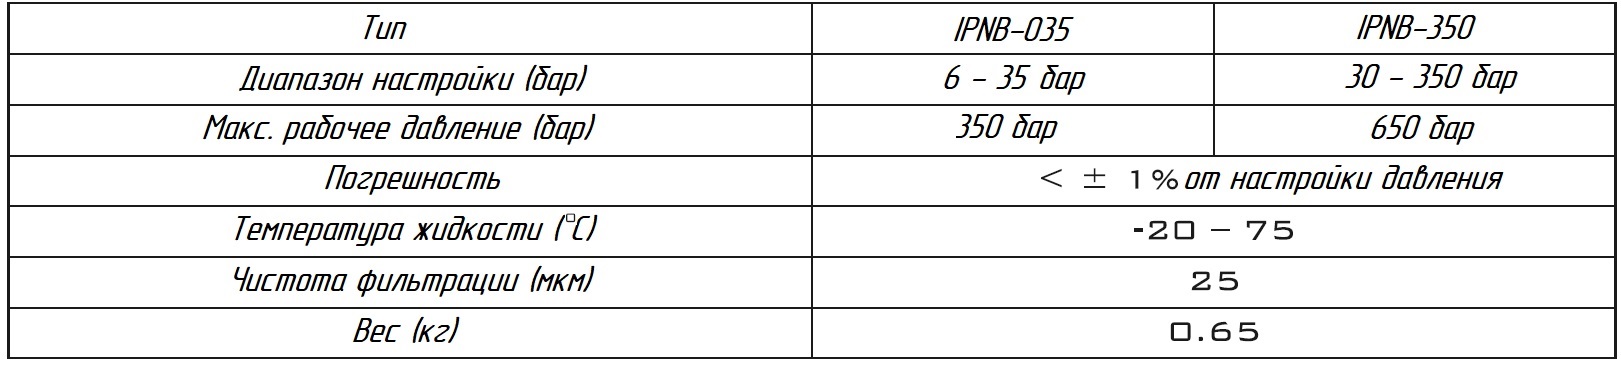 Таблица возможных регулировок и погрешностей, реле давления - IPNB